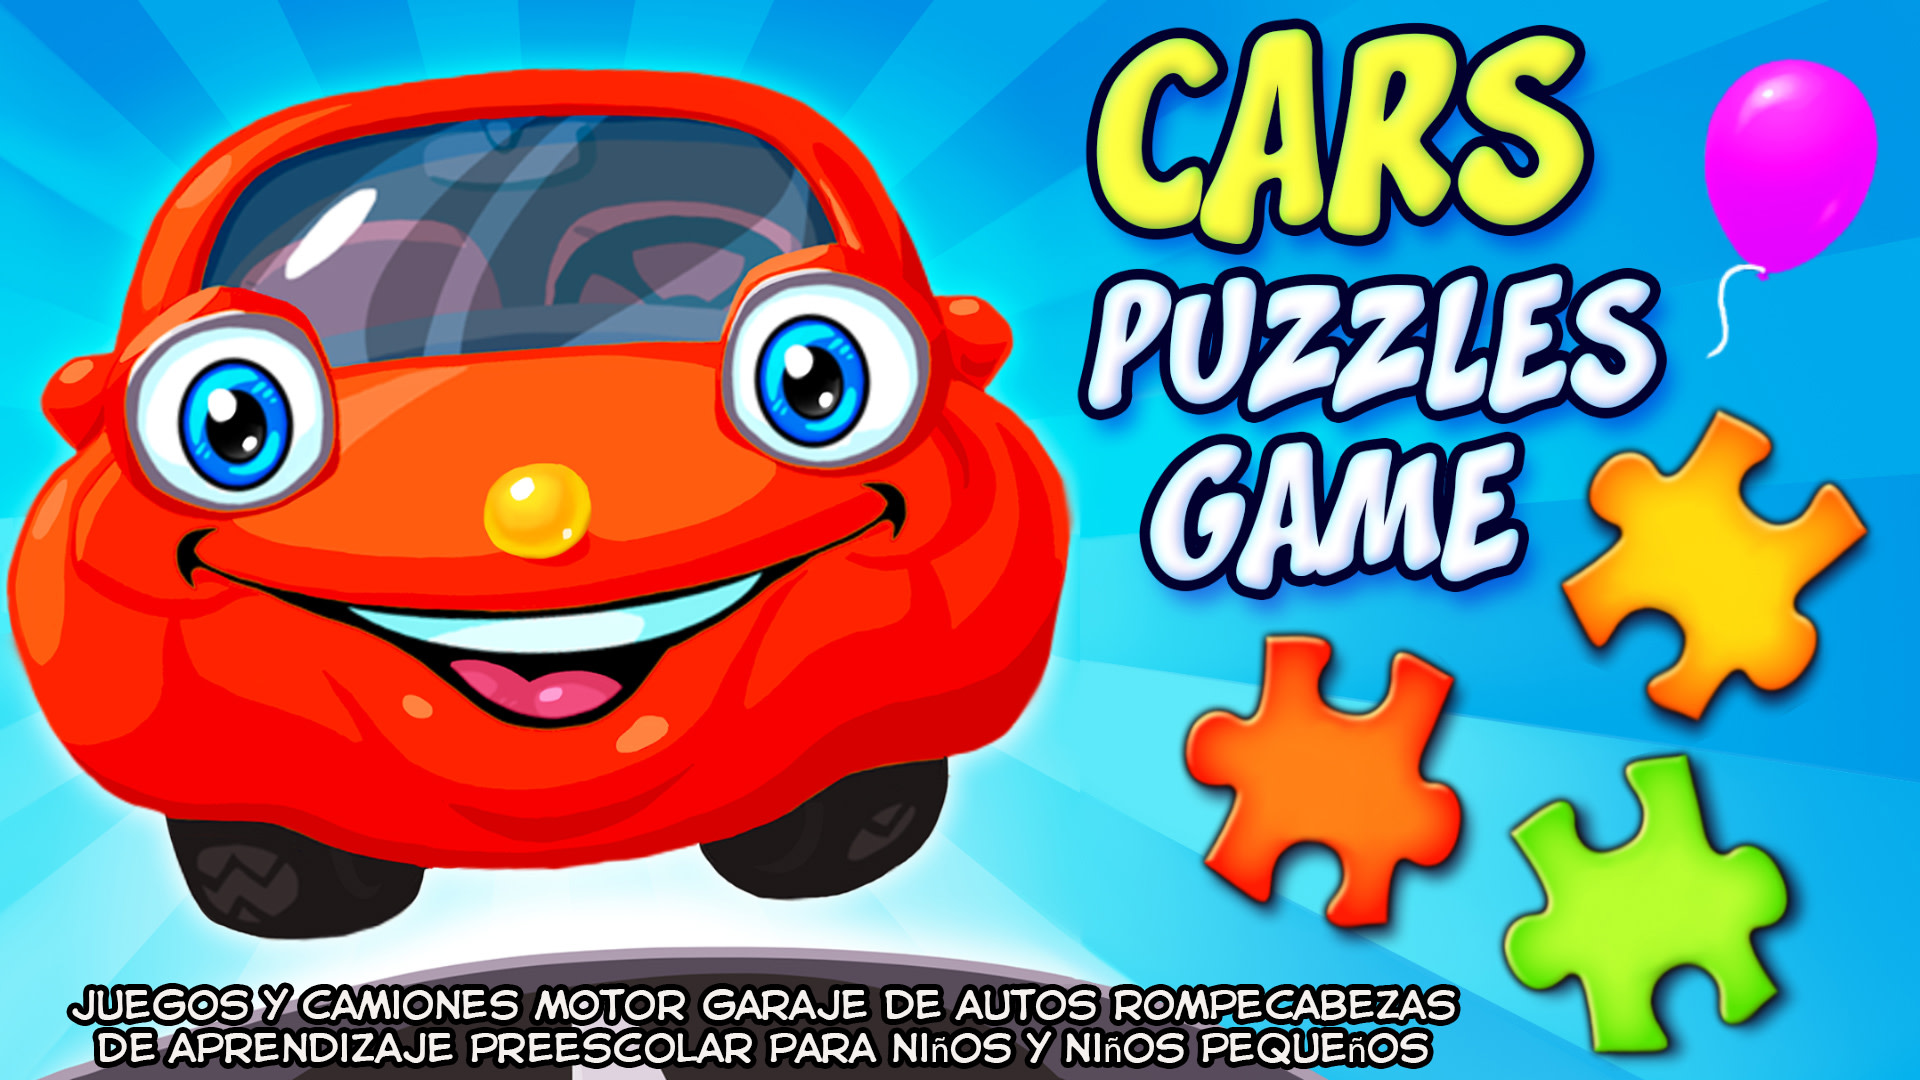 Cars Puzzles Game - juegos y camiones motor garaje de autos rompecabezas de aprendizaje preescolar para niños y niños pequeños  1